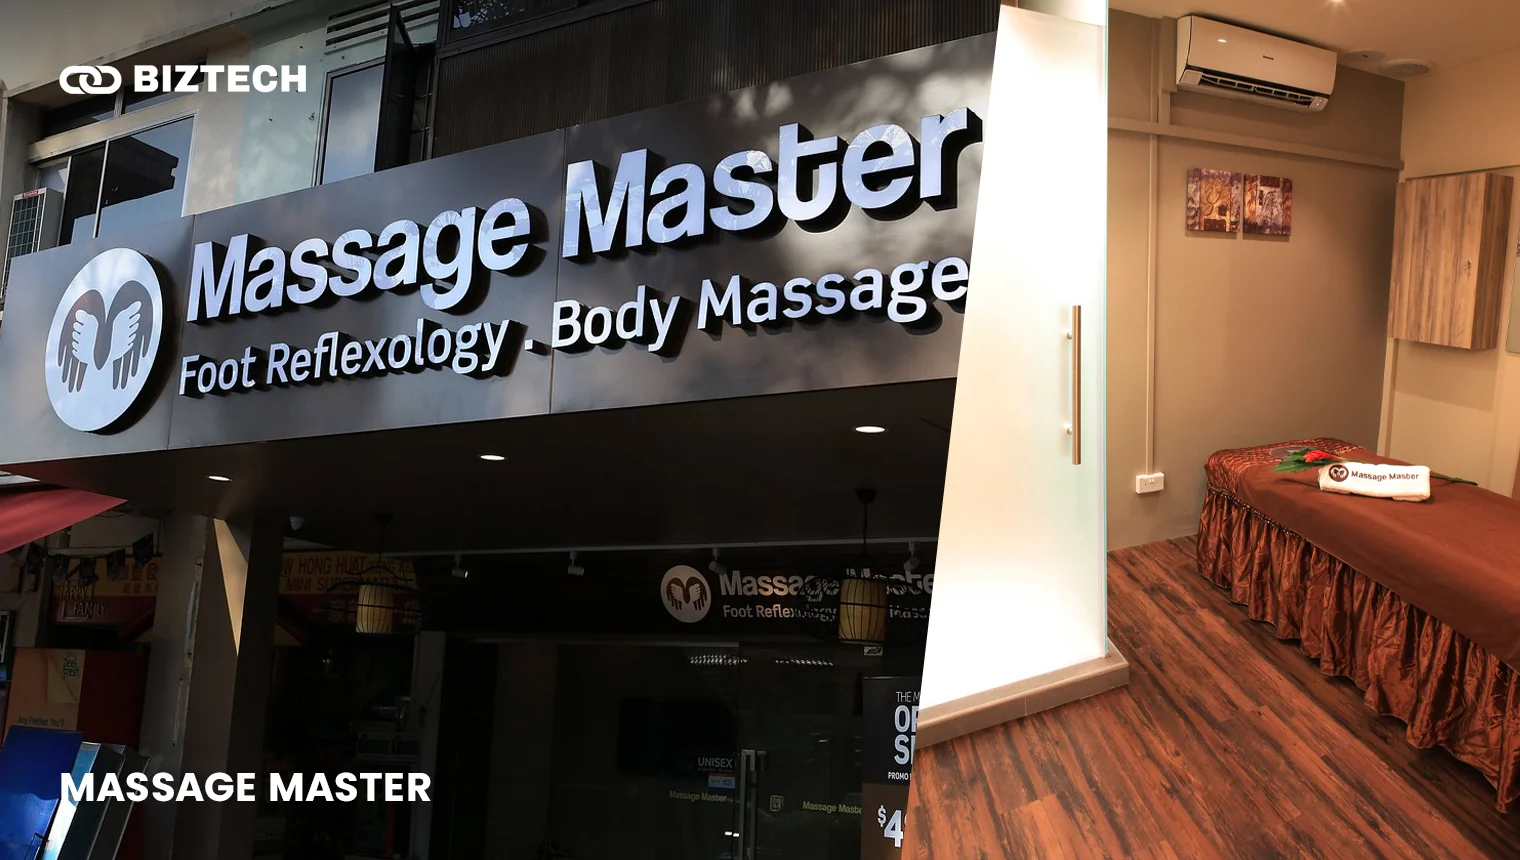 Massage Master